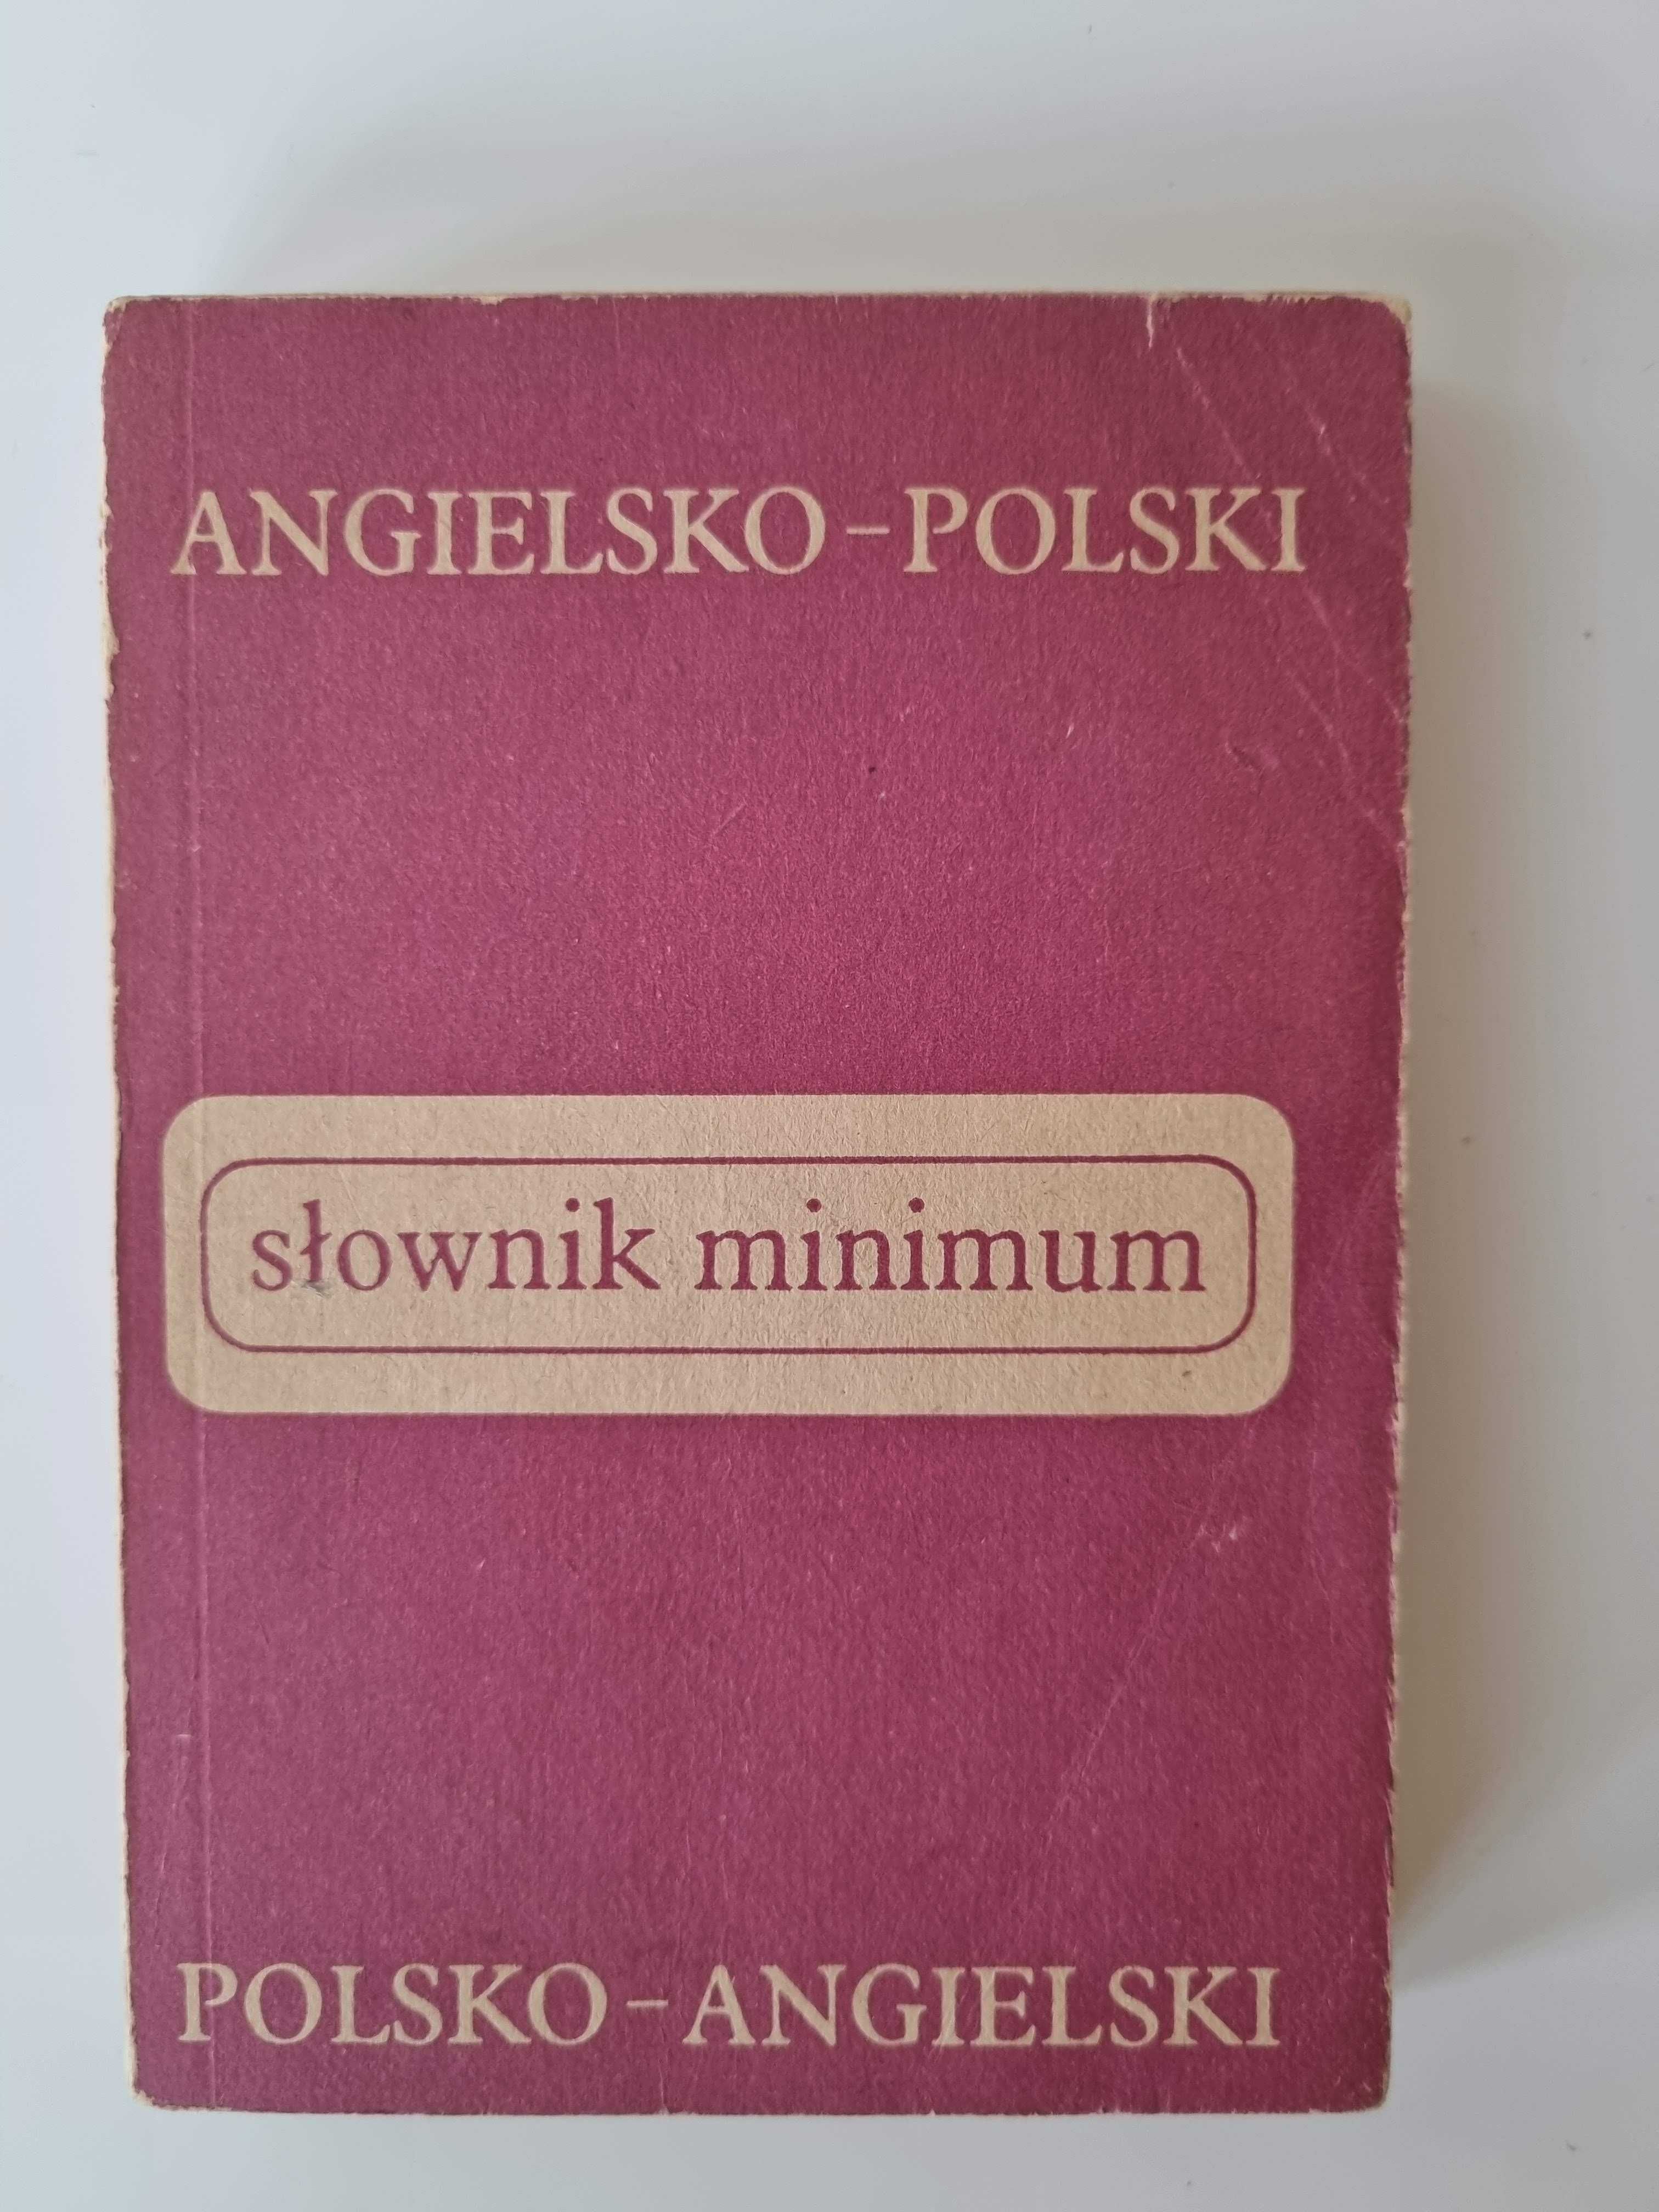 Polsko-angielski słownik angielsko-polski kieszonkowy podręczny